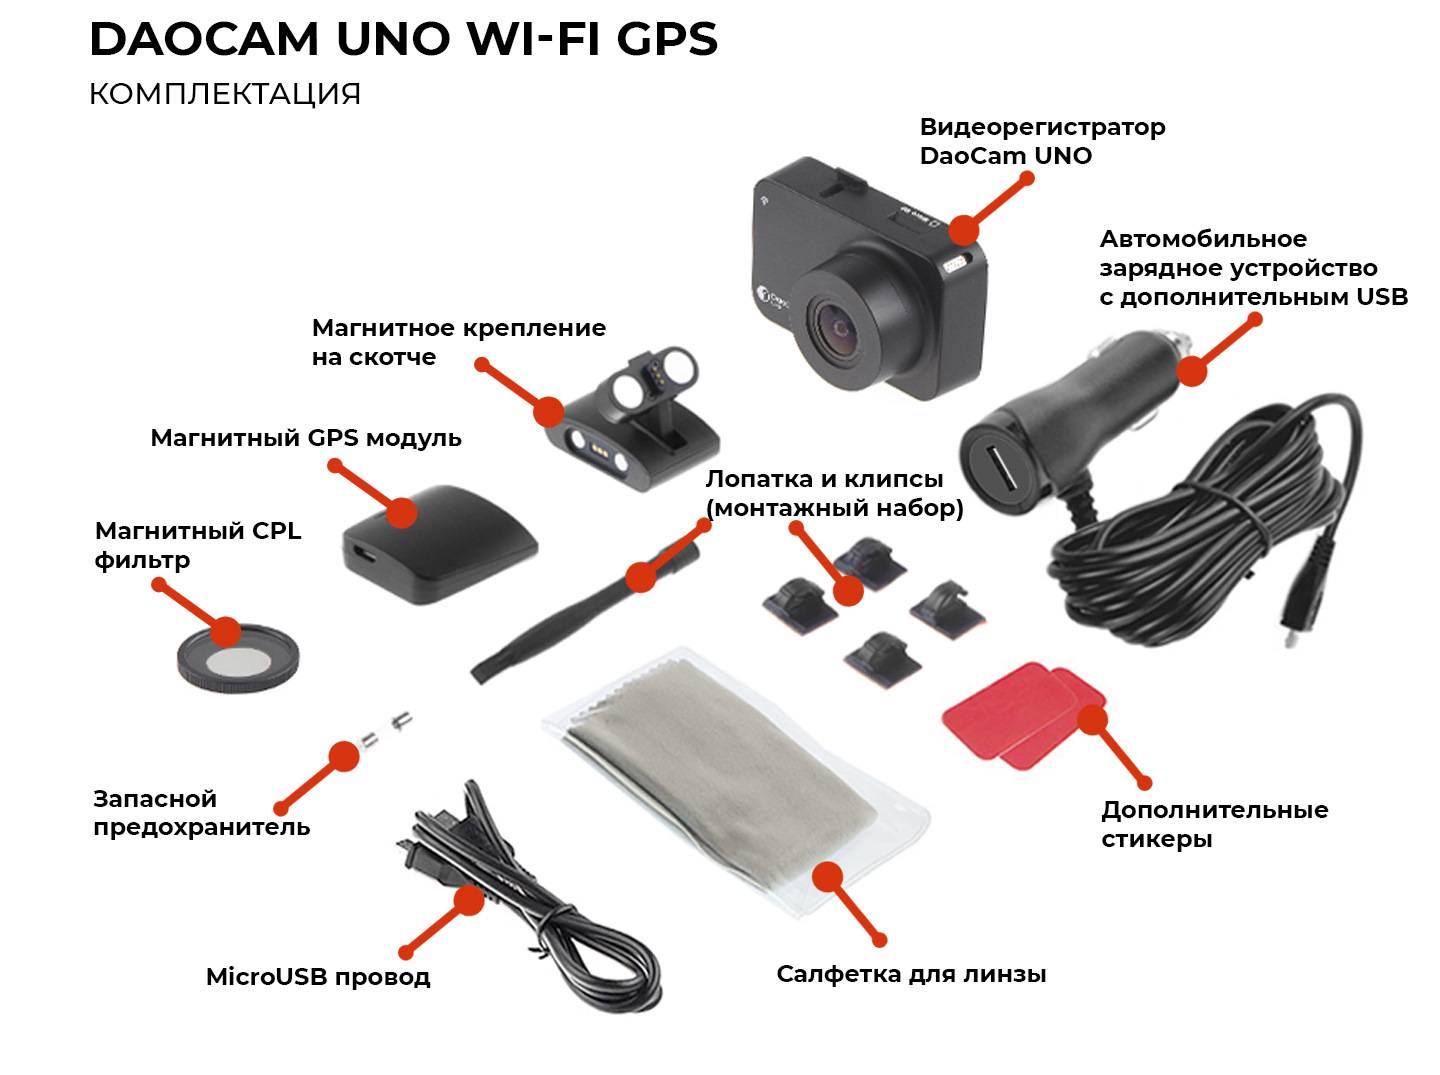 Обзор видеорегистратора Daocam Uno Wi-Fi с функцией GPS и матрицей Sony